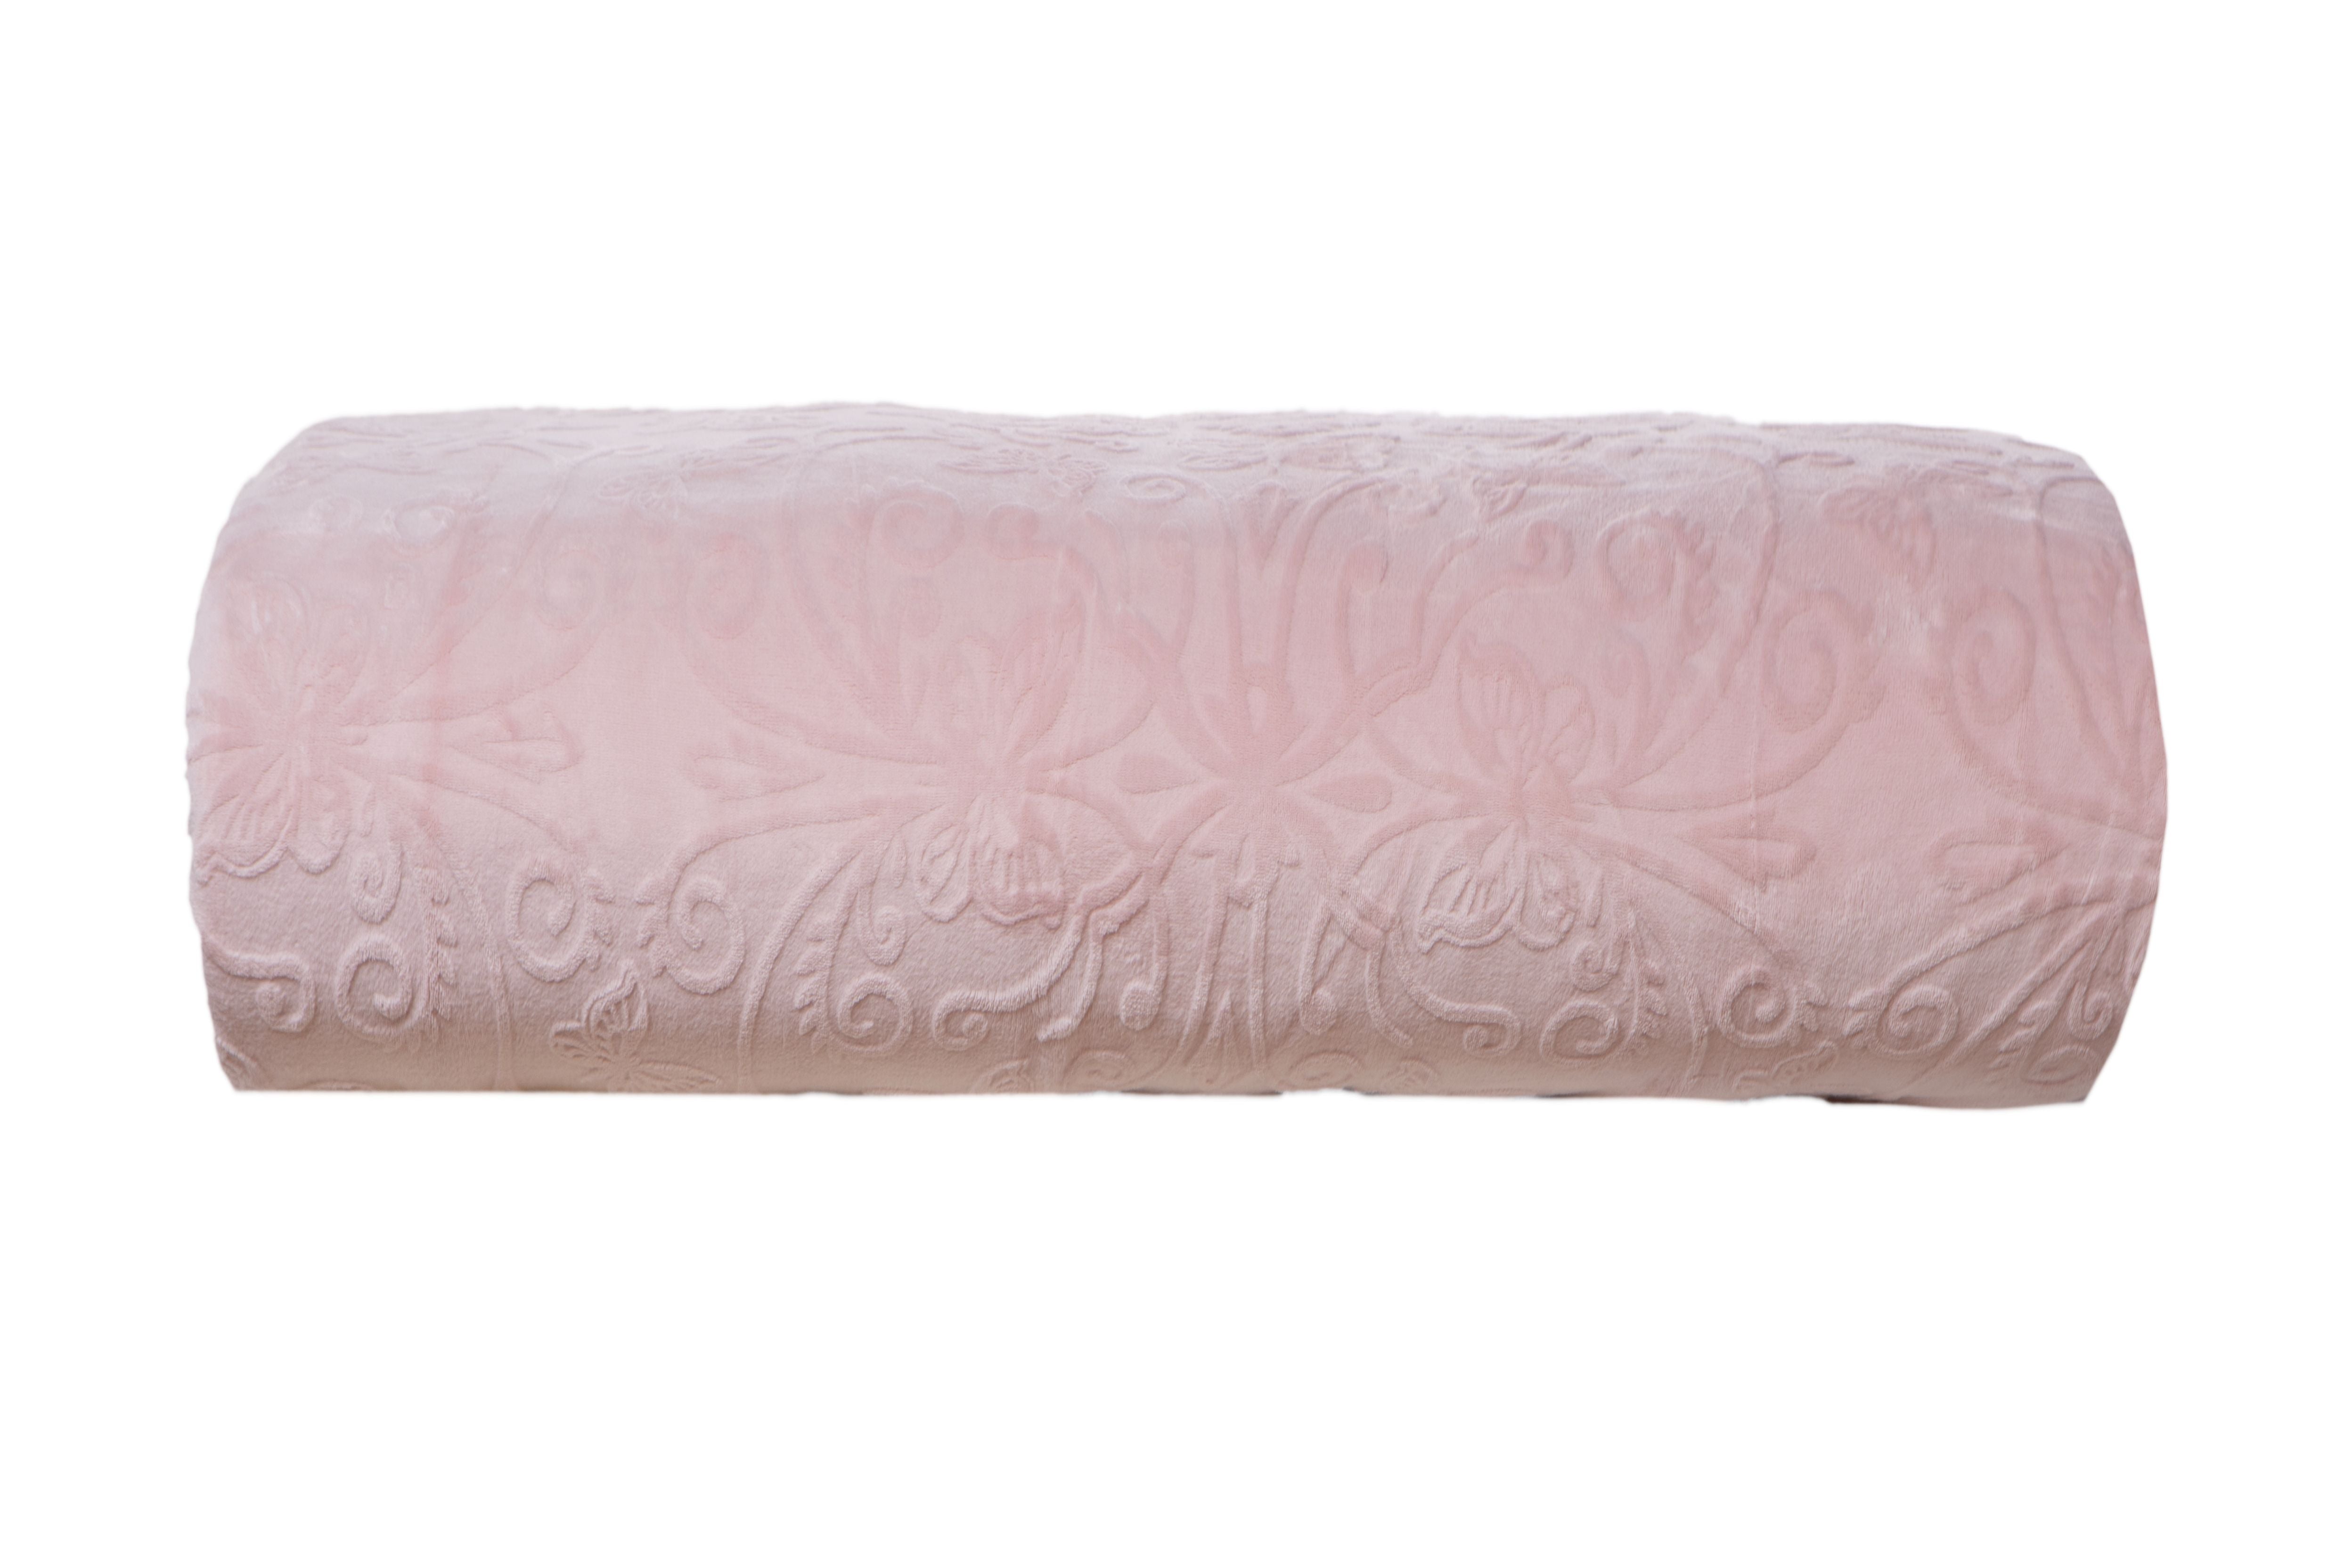 Coperta plaid soffice morbido caldo resistente plaid divano plaid letto in pile flanellato retro agnellato sherpa 130 X 160 CM FARFALLE JACQUARD ROSA - SmartDecoHome